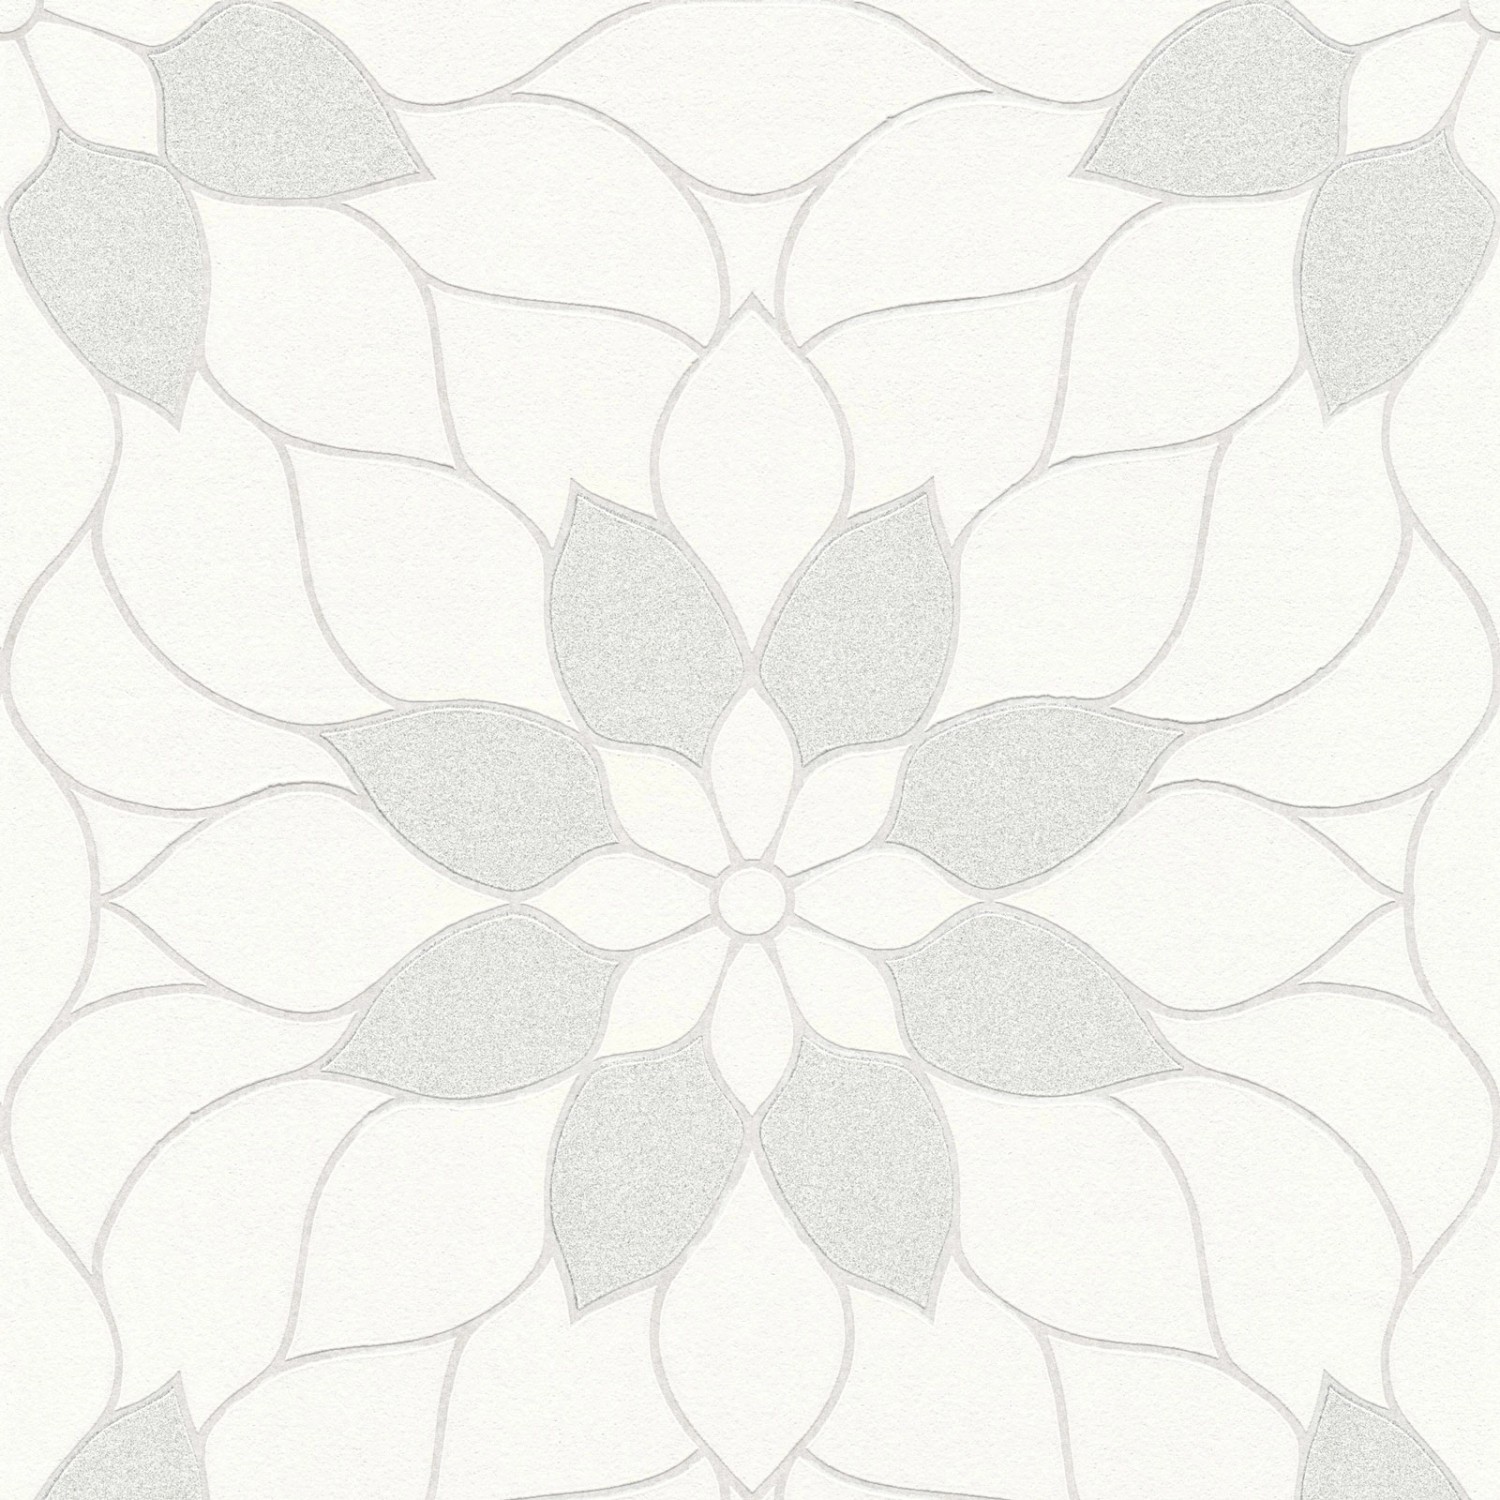 Bricoflor Mosaik Tapete Floral Moderne Vlies Mustertapete Weiß Grau mit Silber Glitzer Effekt Blumen Vliestapete Ideal f